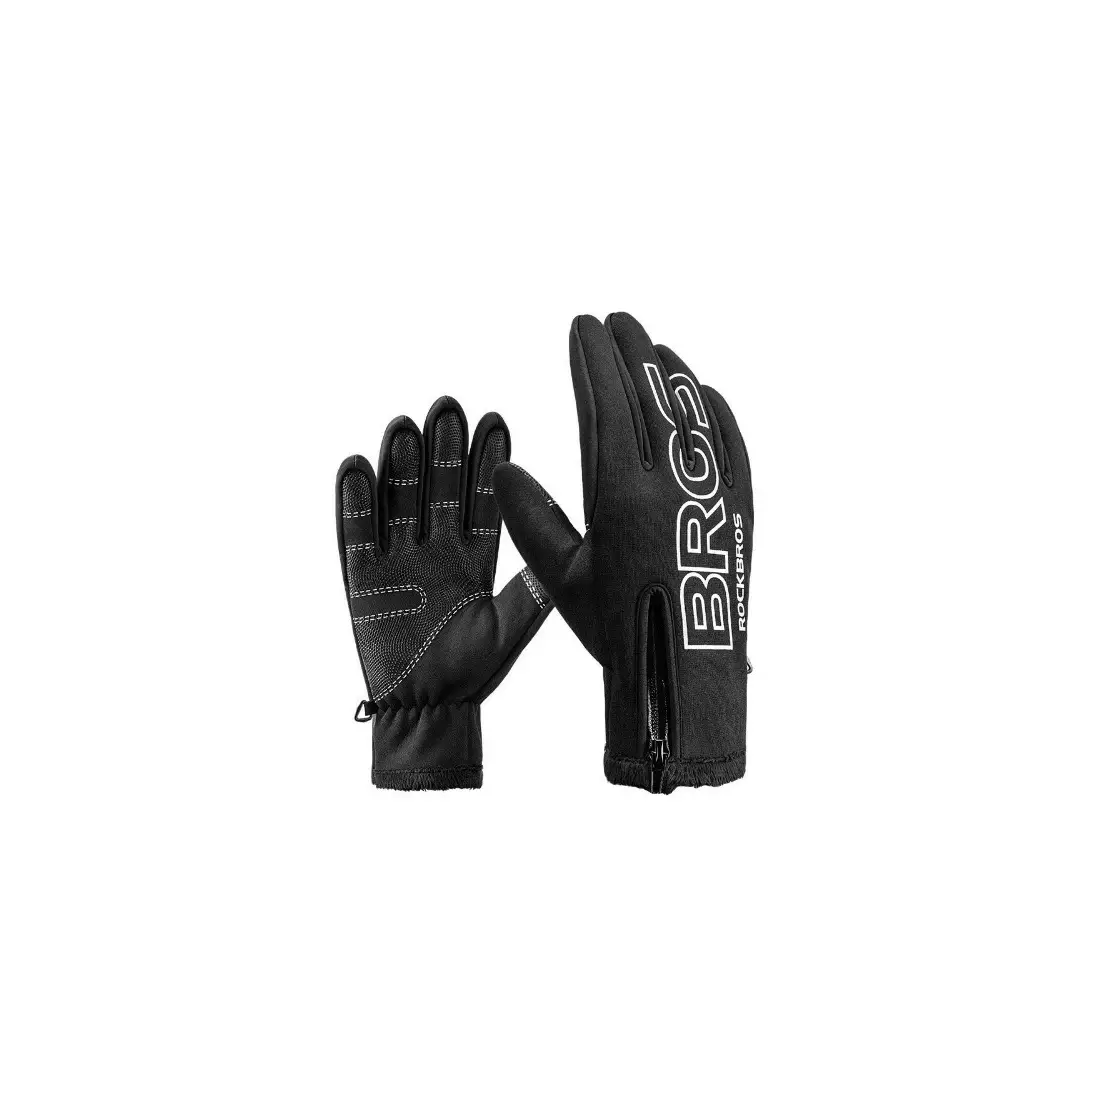 Rockbros zimní cyklistické rukavice softshell, Černá S091-4BK